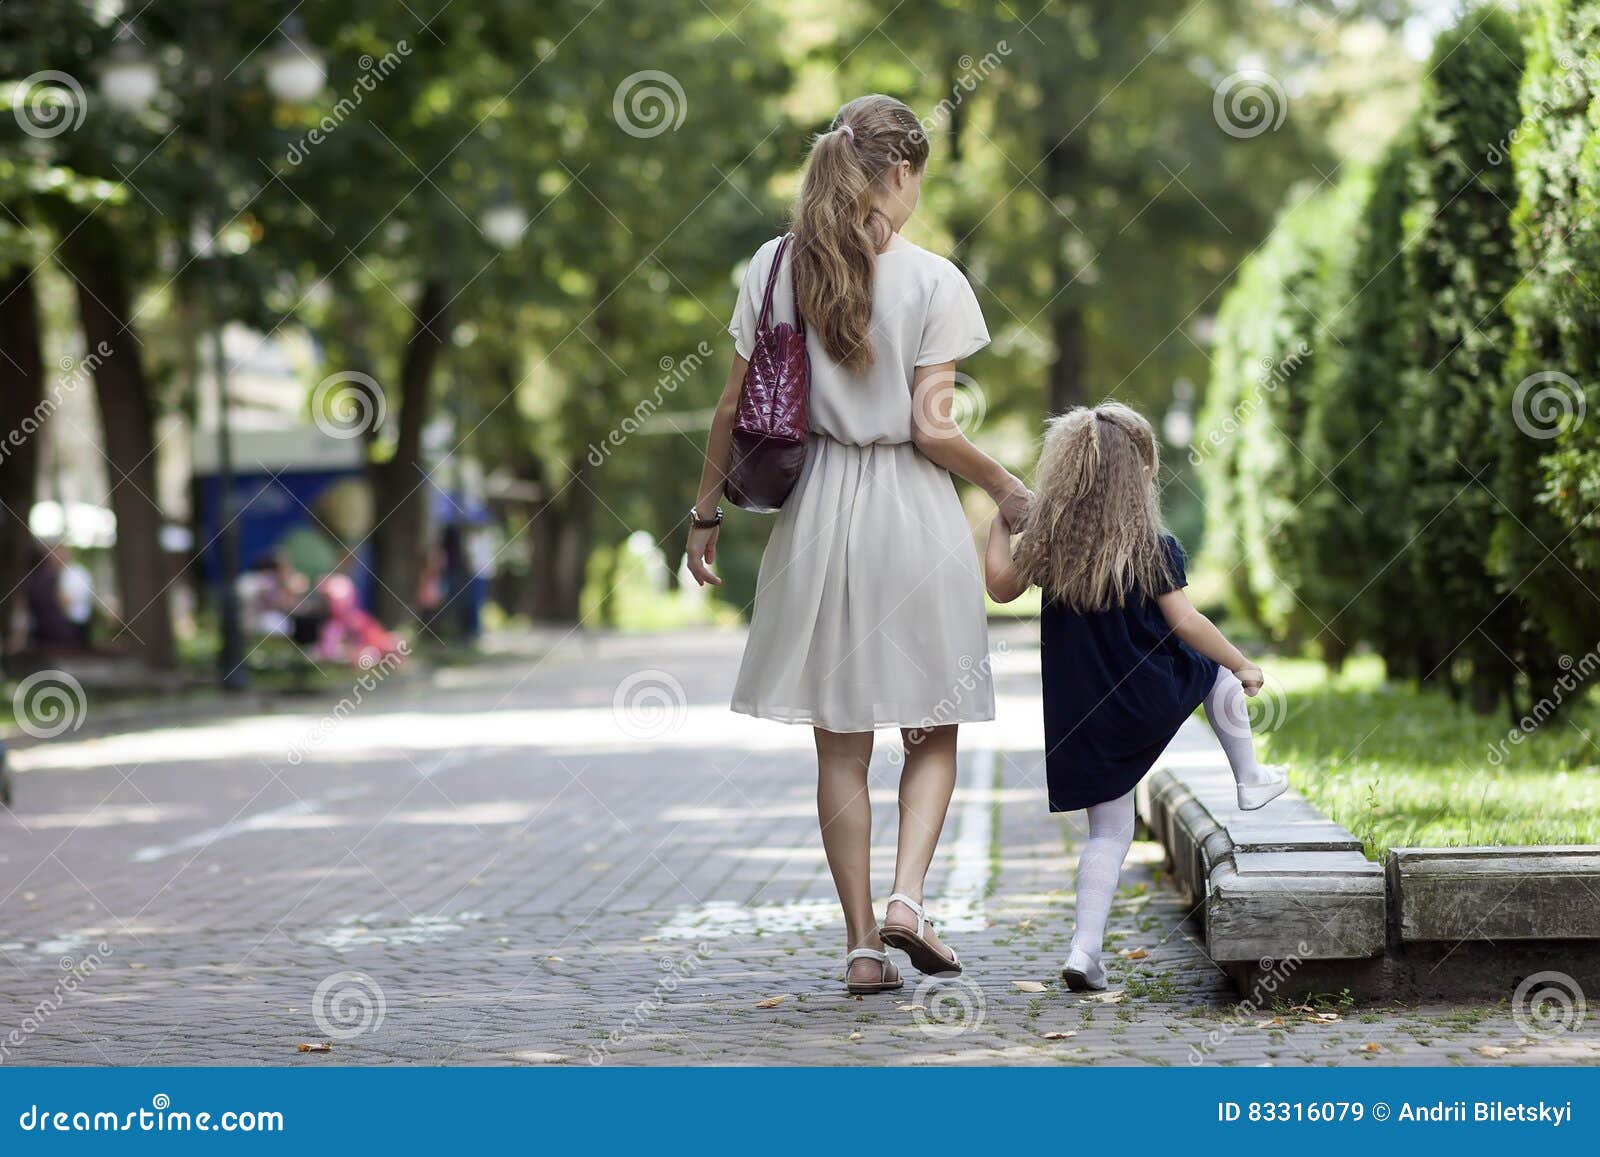 Мама пойдем на улицу. Девушка с дочкой гуляет. Девочка гуляет с мамой. Девушка с дочкой гуляют в парке. Гулять ходили с дочей.